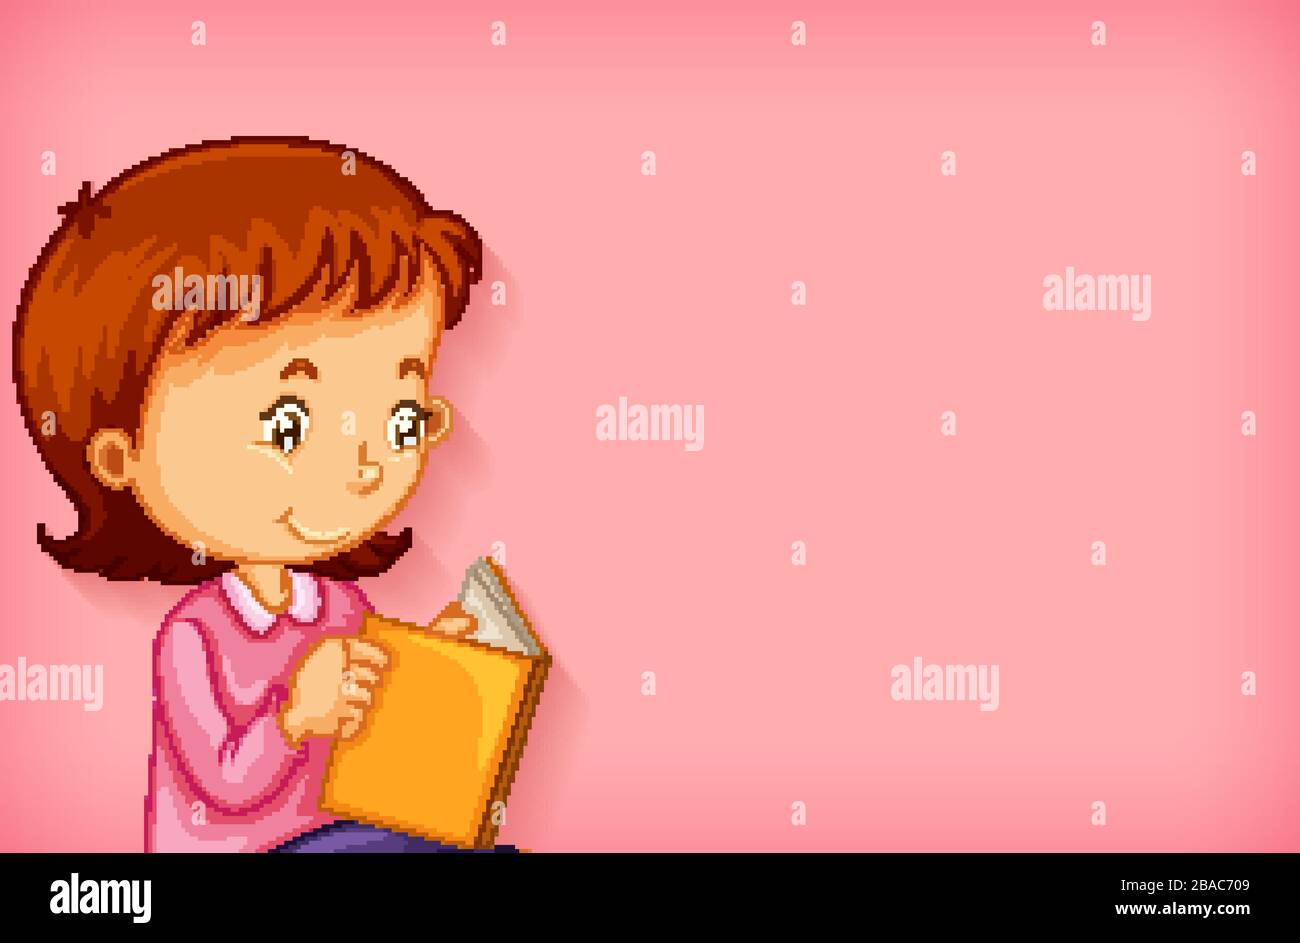 Thiết kế nền với hình minh họa cô gái đọc sách: Thiết kế độc đáo, tạo hình với cô gái đọc sách sẽ giúp bạn thật sự tận hưởng từng trang sách một cách sống động và đầy màu sắc. Đến với chúng tôi và kéo dài cảm giác tươi mới trong từng trang sách yêu thích của bạn. 